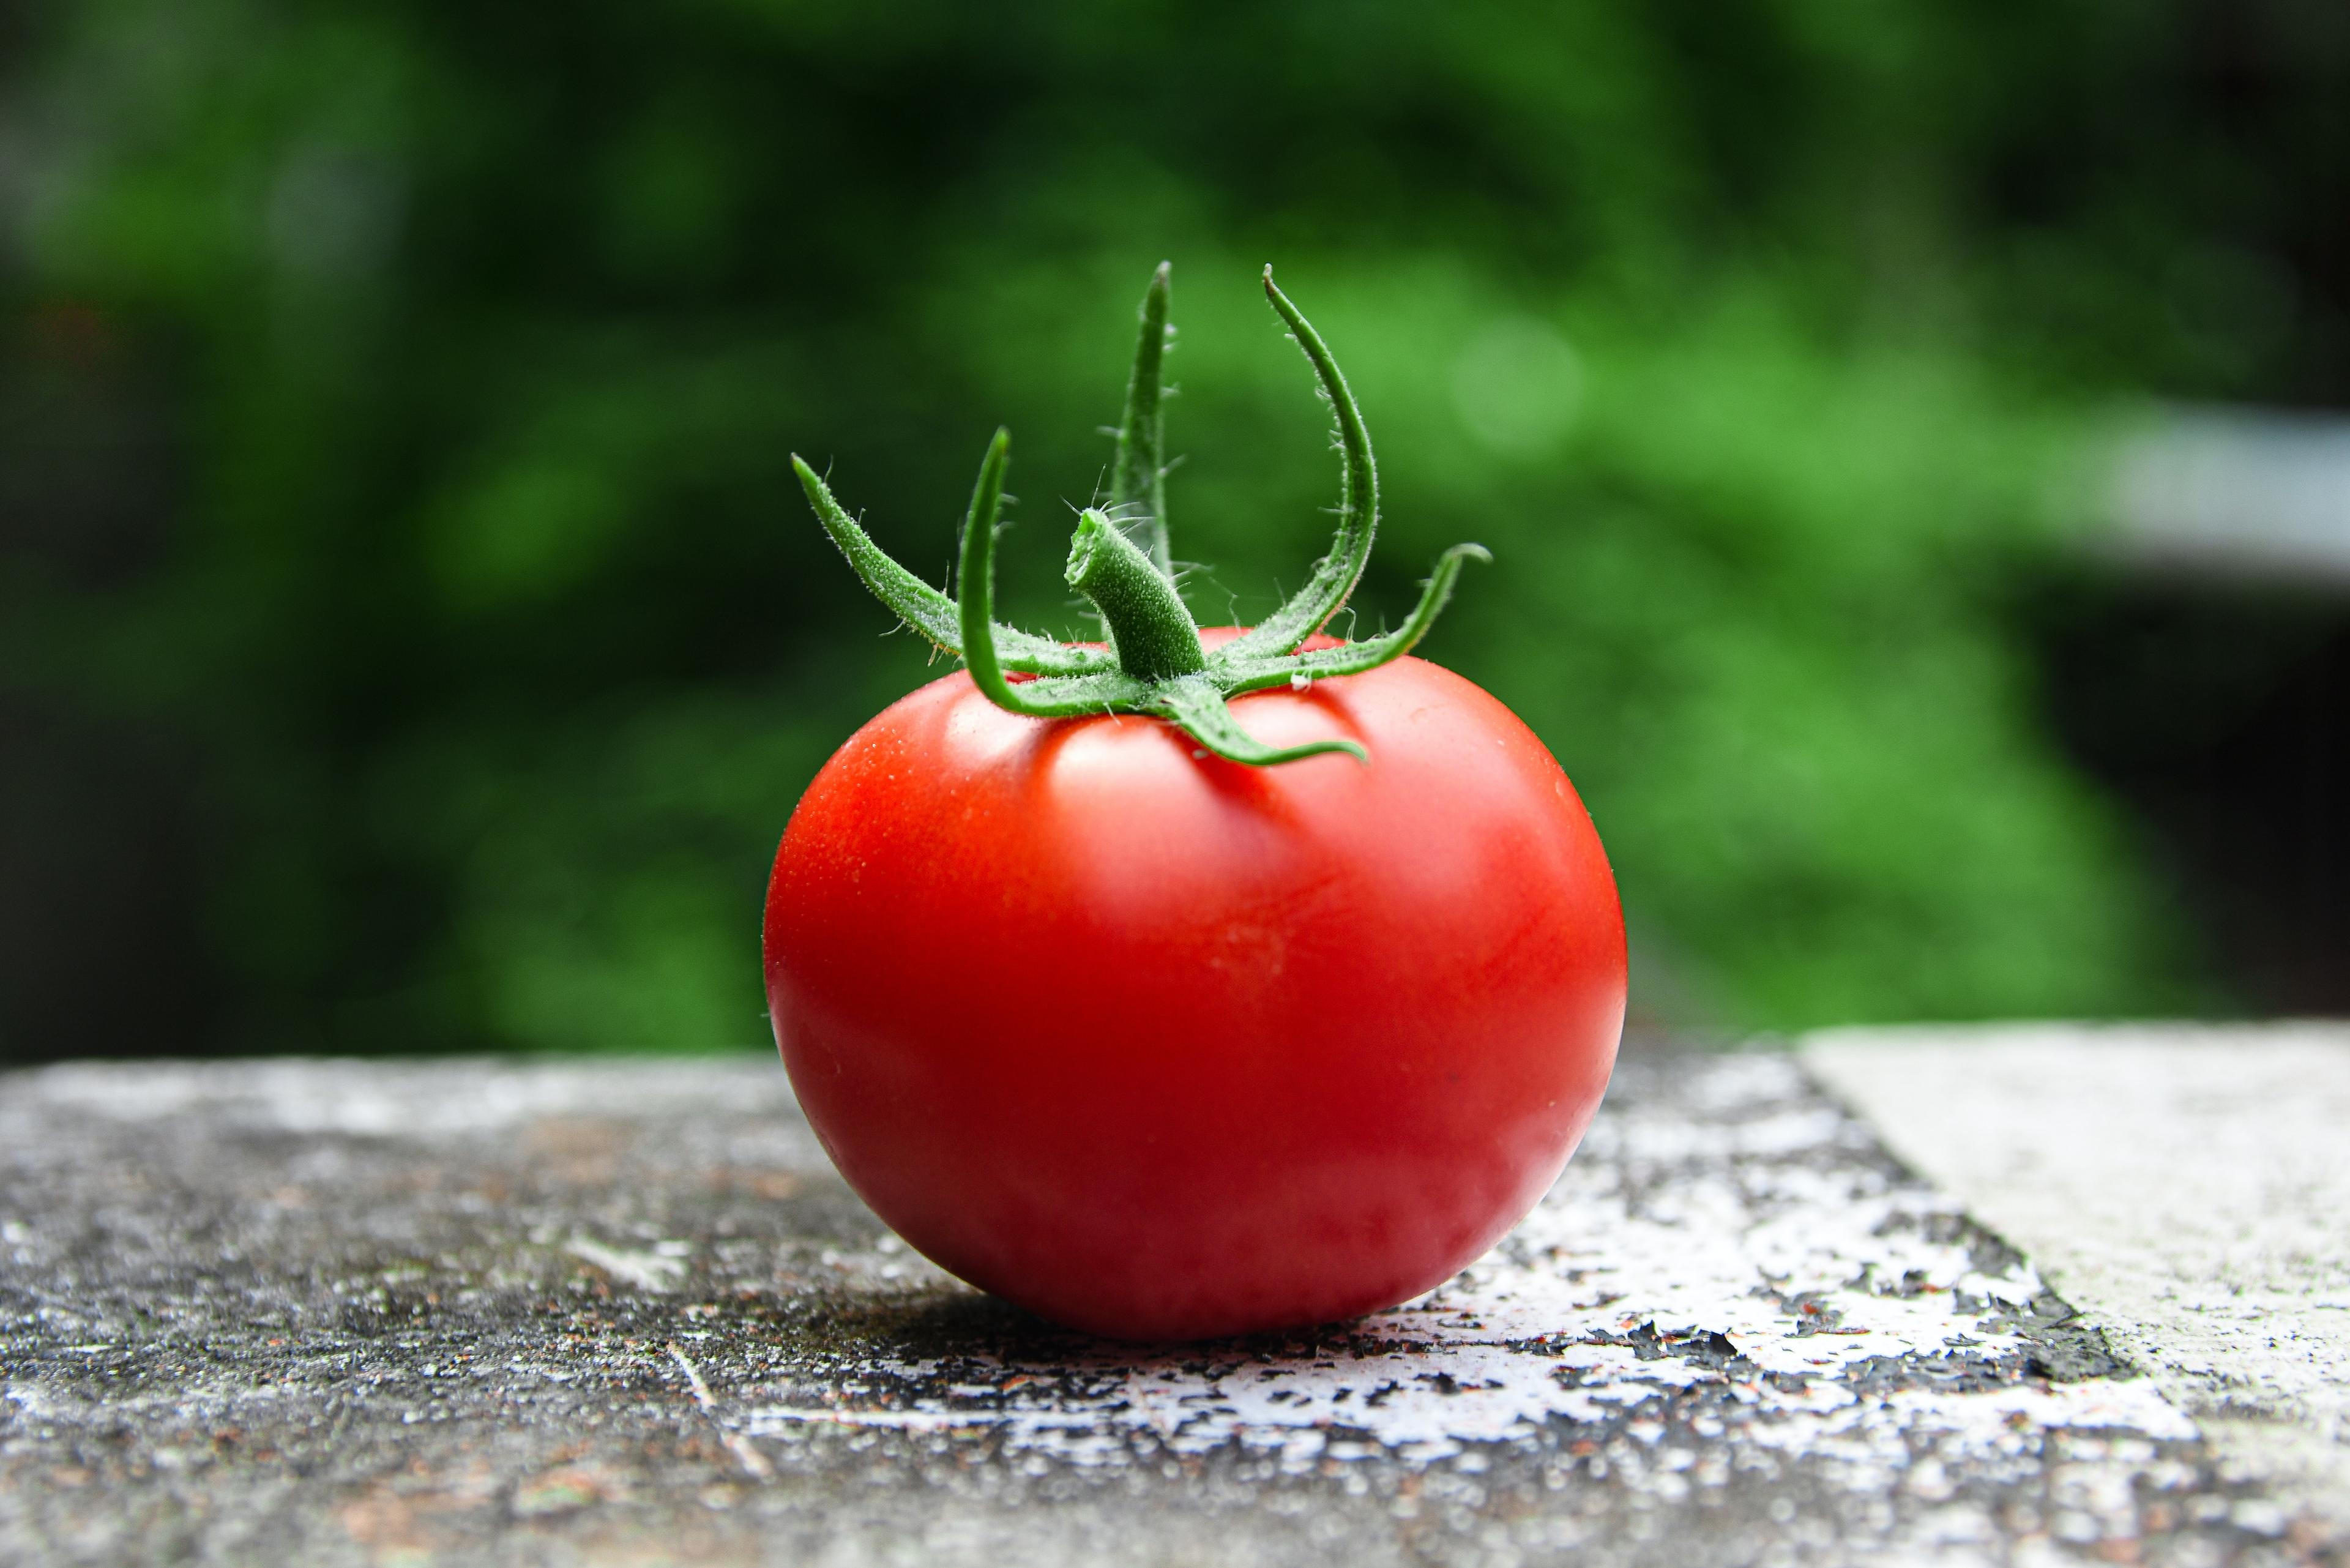 Jakie witaminy występują w pomidorach? Znaczenie pomidorów w zdrowej diecie. Co jest najcenniejszego w pomidorach? Właściwości pomidorów. Pomidory - właściwości lecznicze i wartości odżywcze